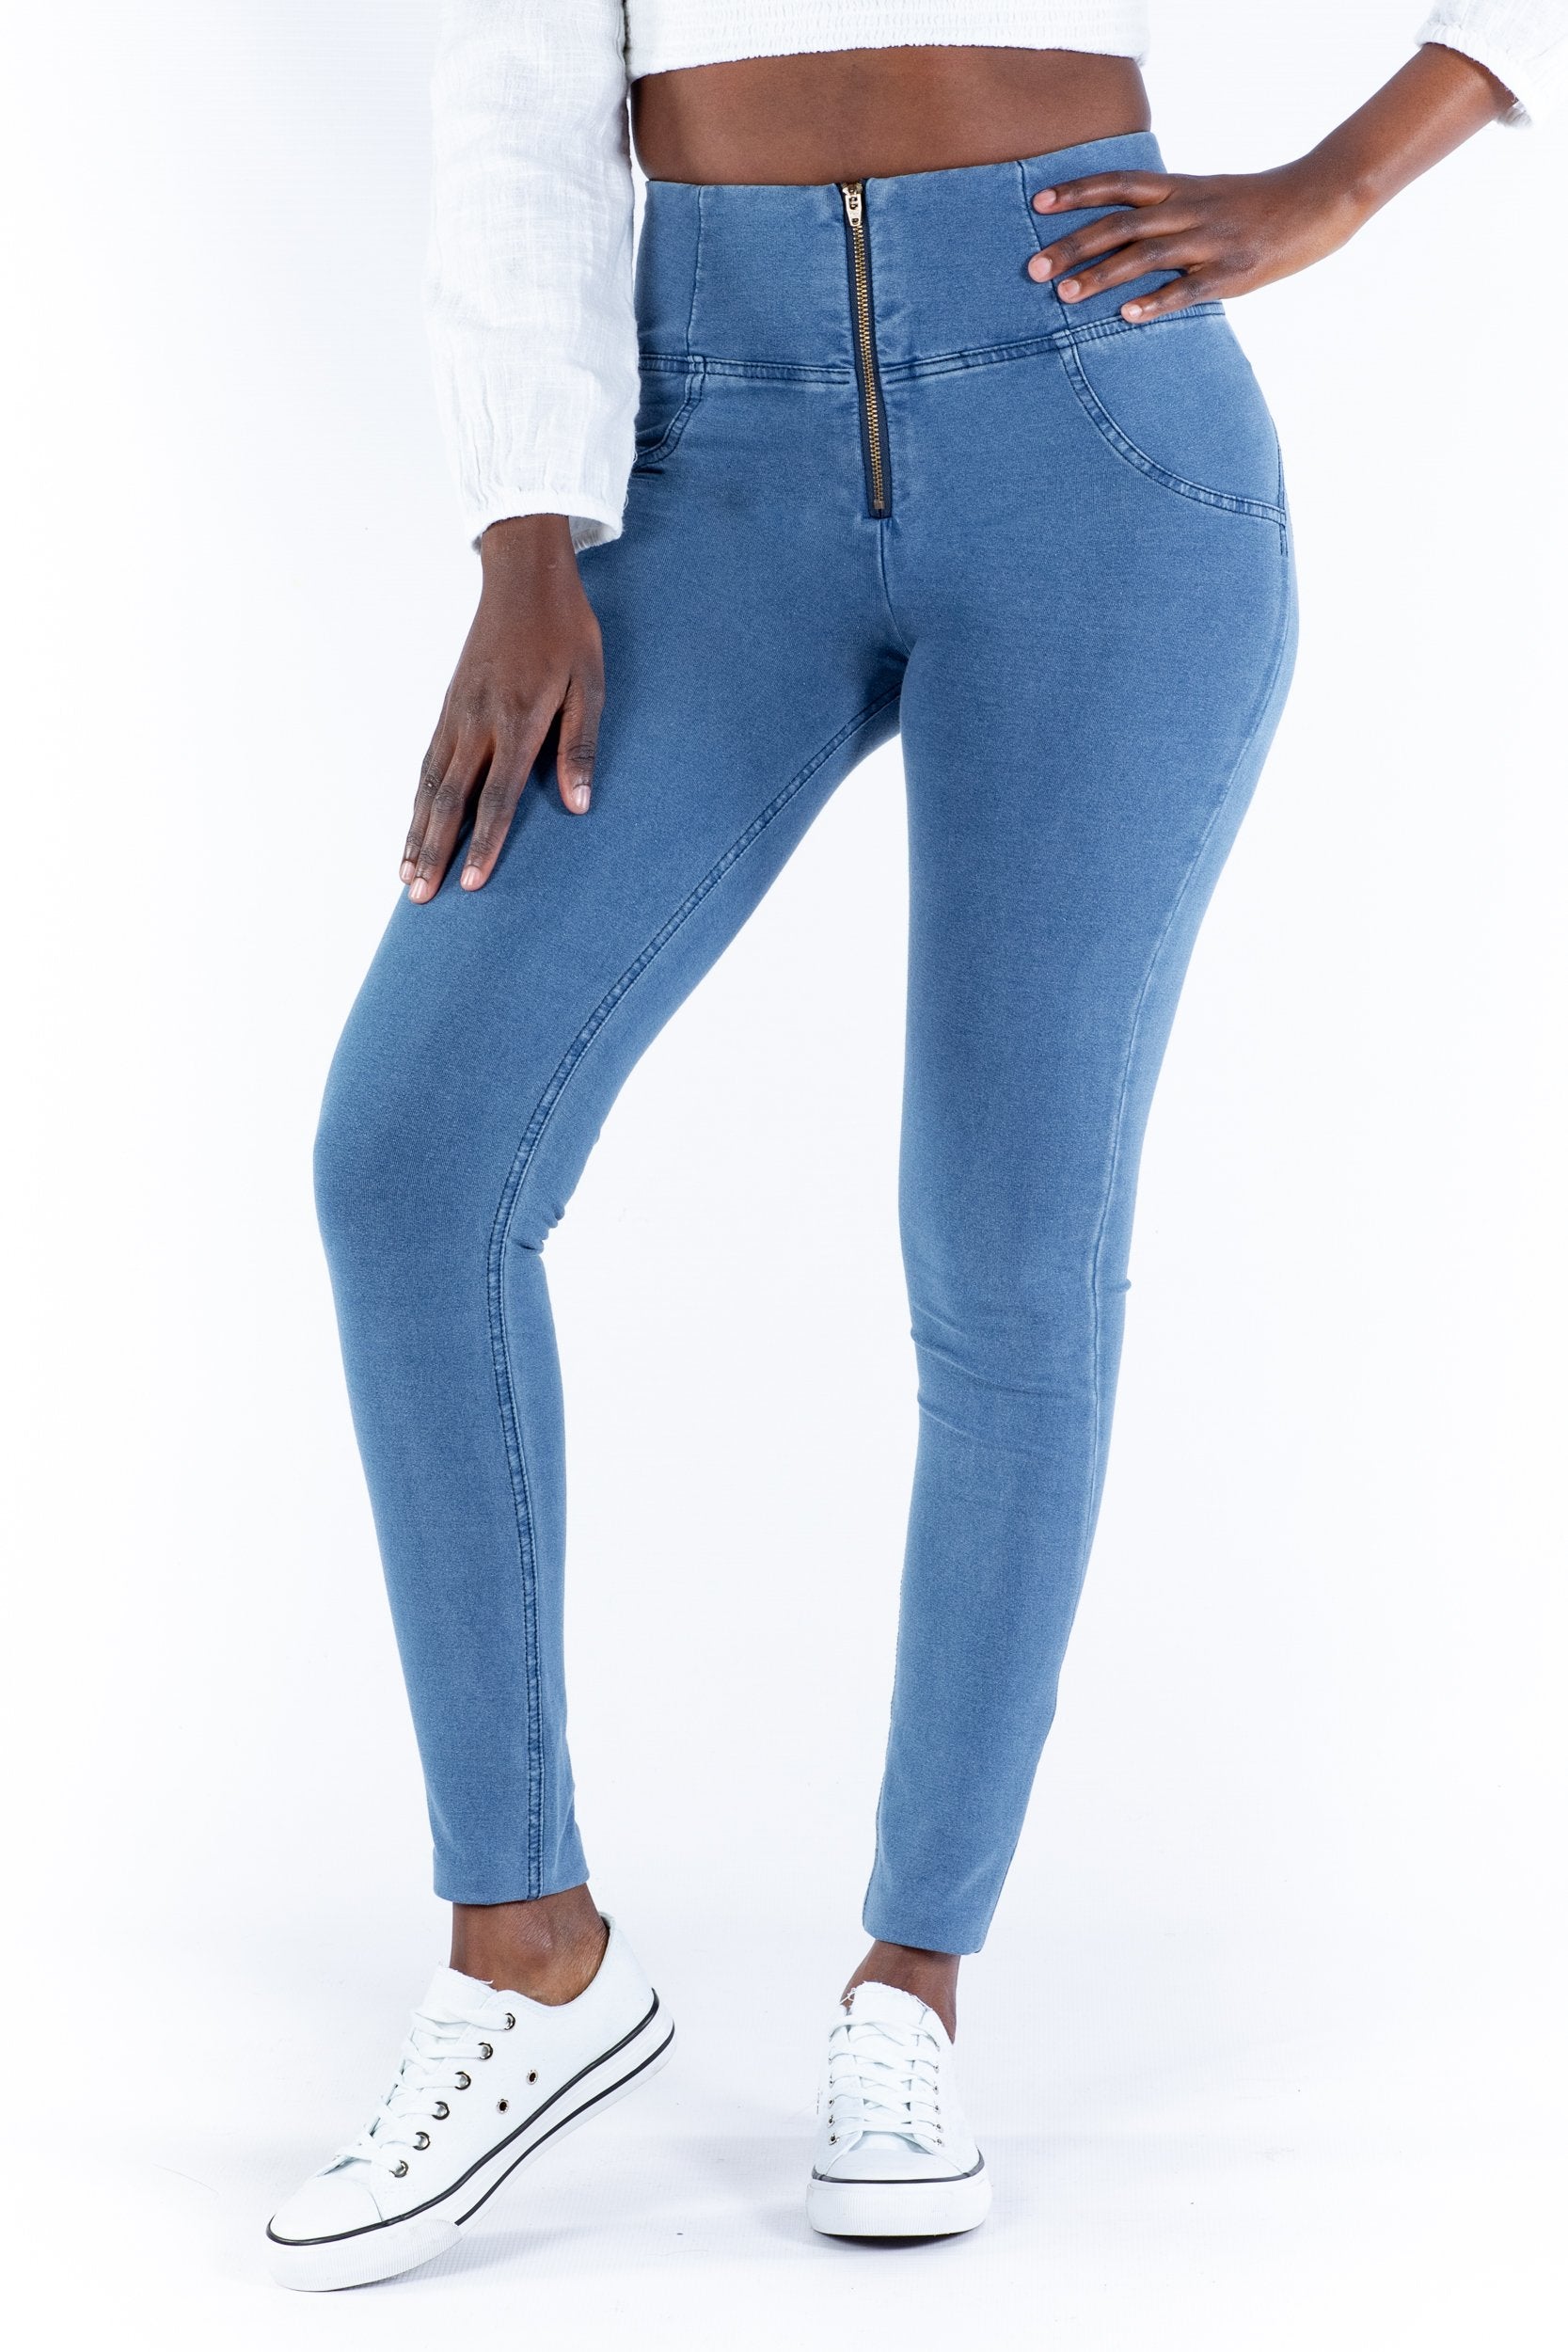 High Waist Tight Jeans Women's Scrunch Butt Lifting Slim Fit Sexy